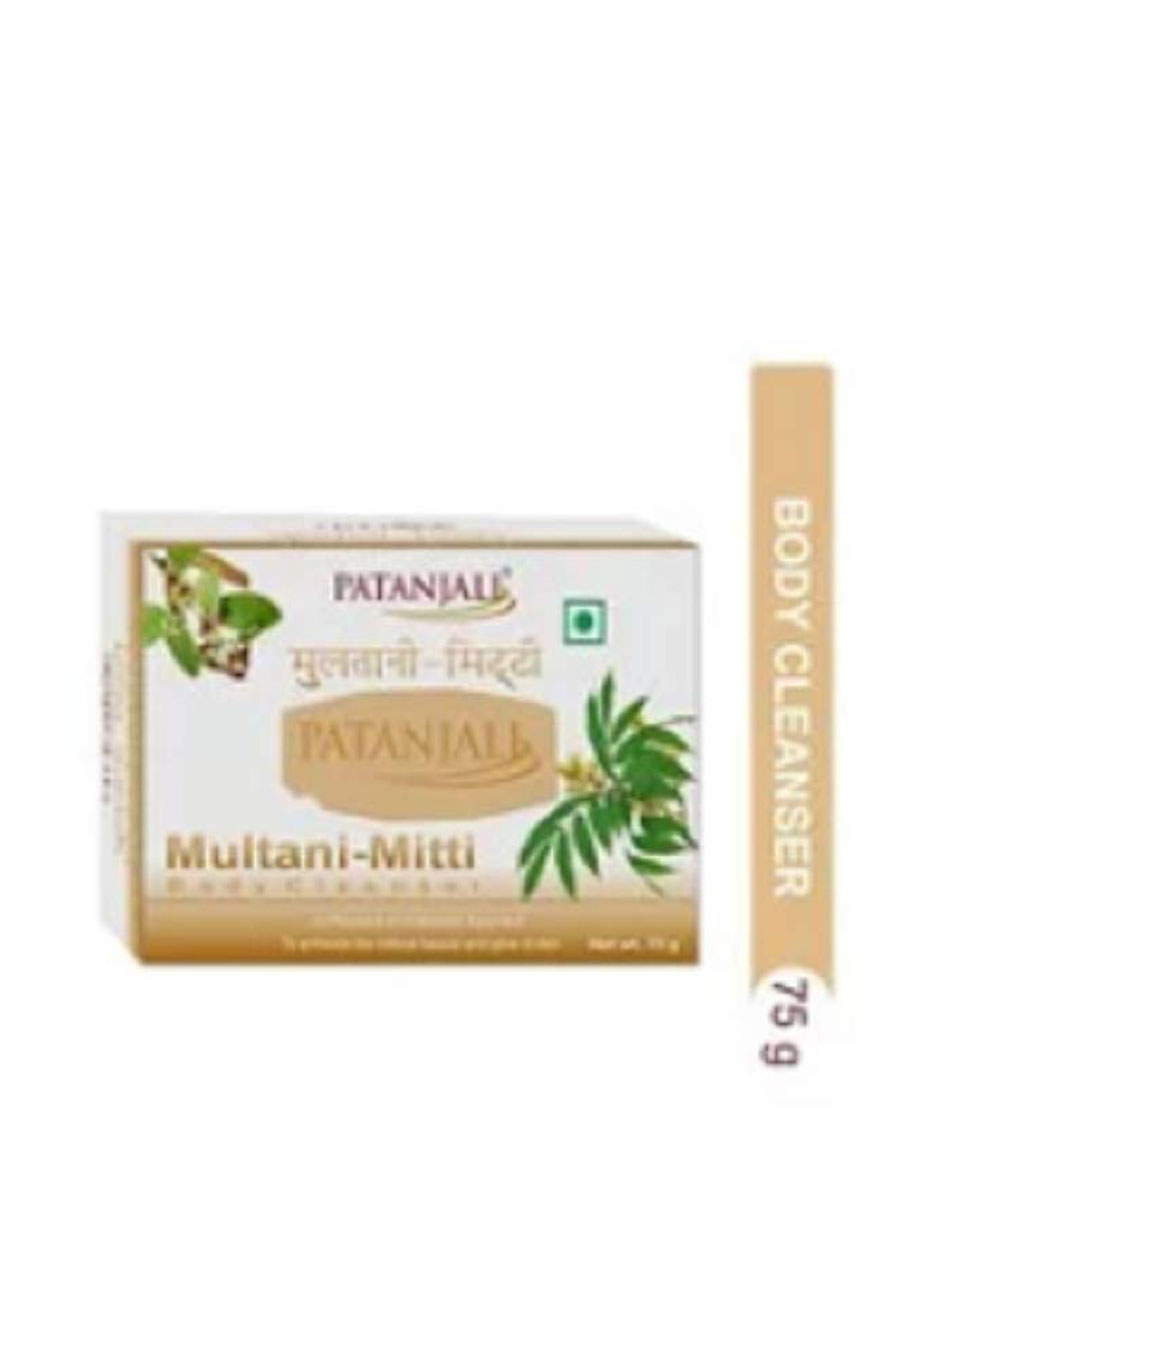 PatanjaliPatanjali Multani-Mitti Body Soap - 75gm - Pack of 3